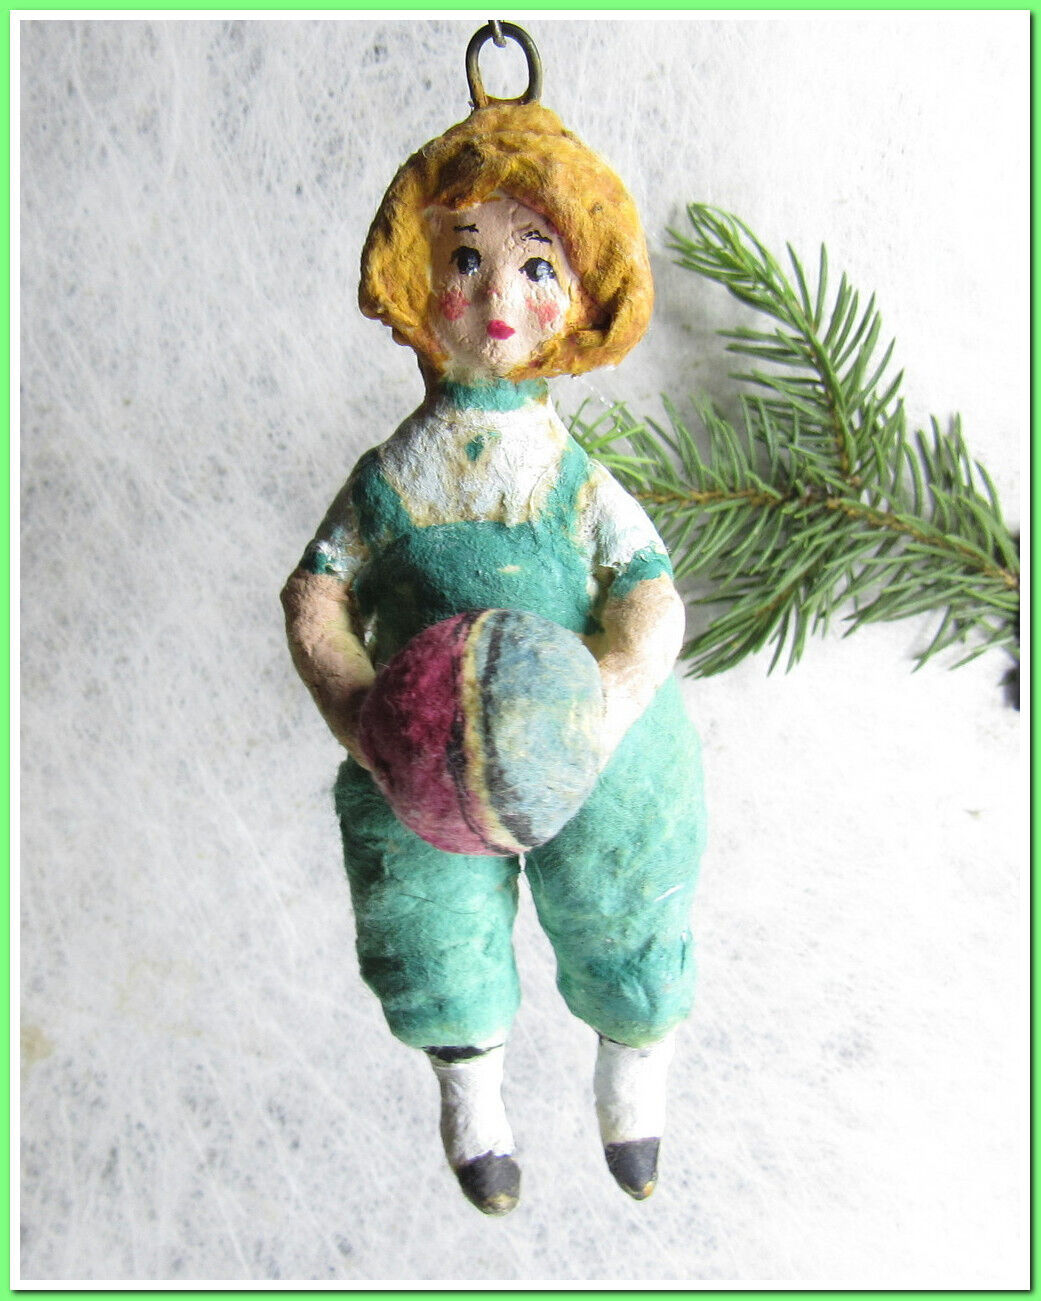 🎄Vintage antique Christmas spun cotton ornament figure #85242